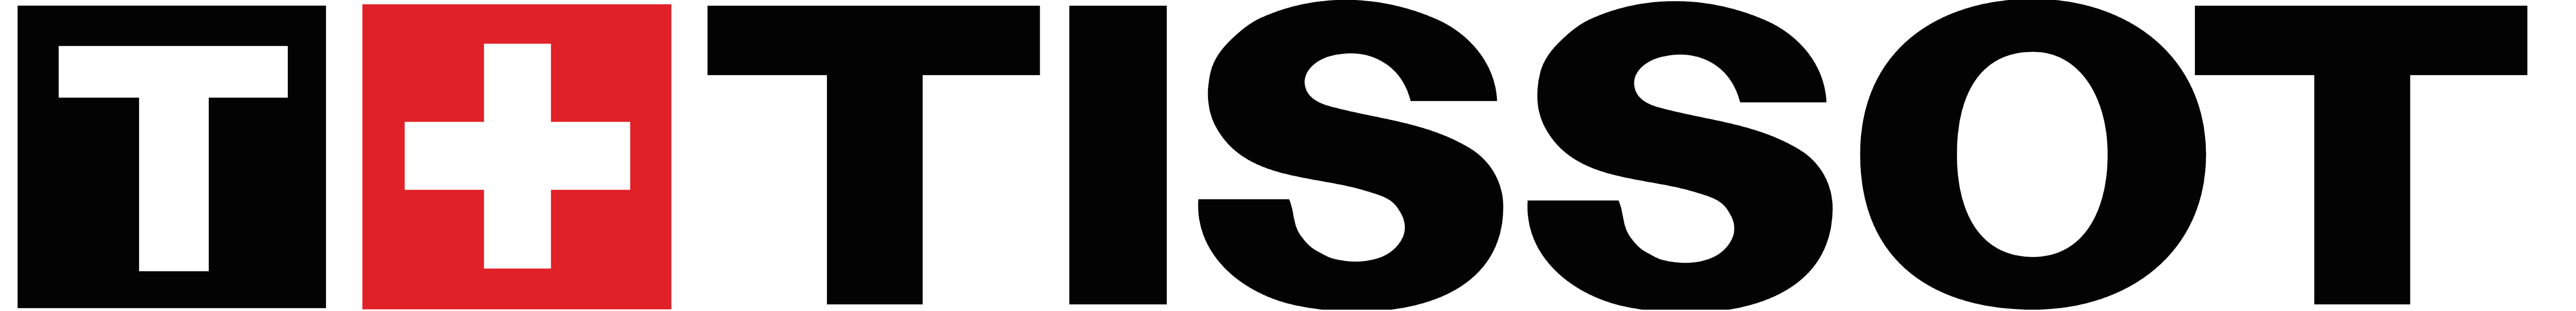 Tissot Logo - Tissot – Logos Download